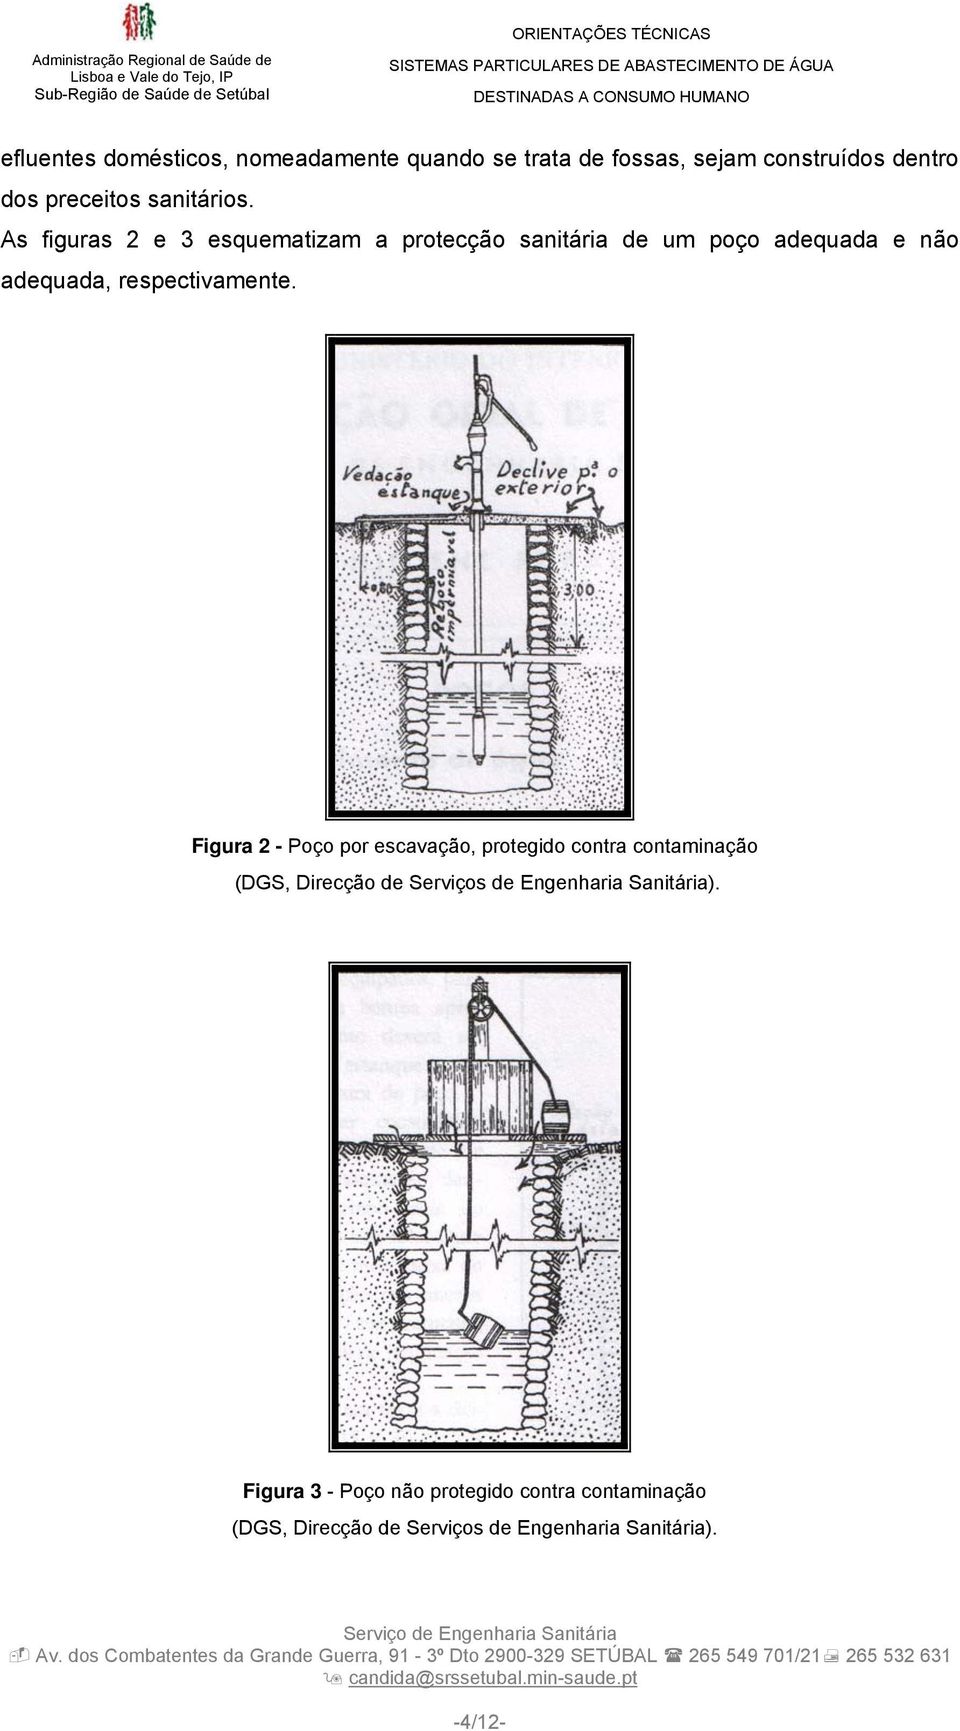 As figuras 2 e 3 esquematizam a protecção sanitária de um poço adequada e não adequada, respectivamente.